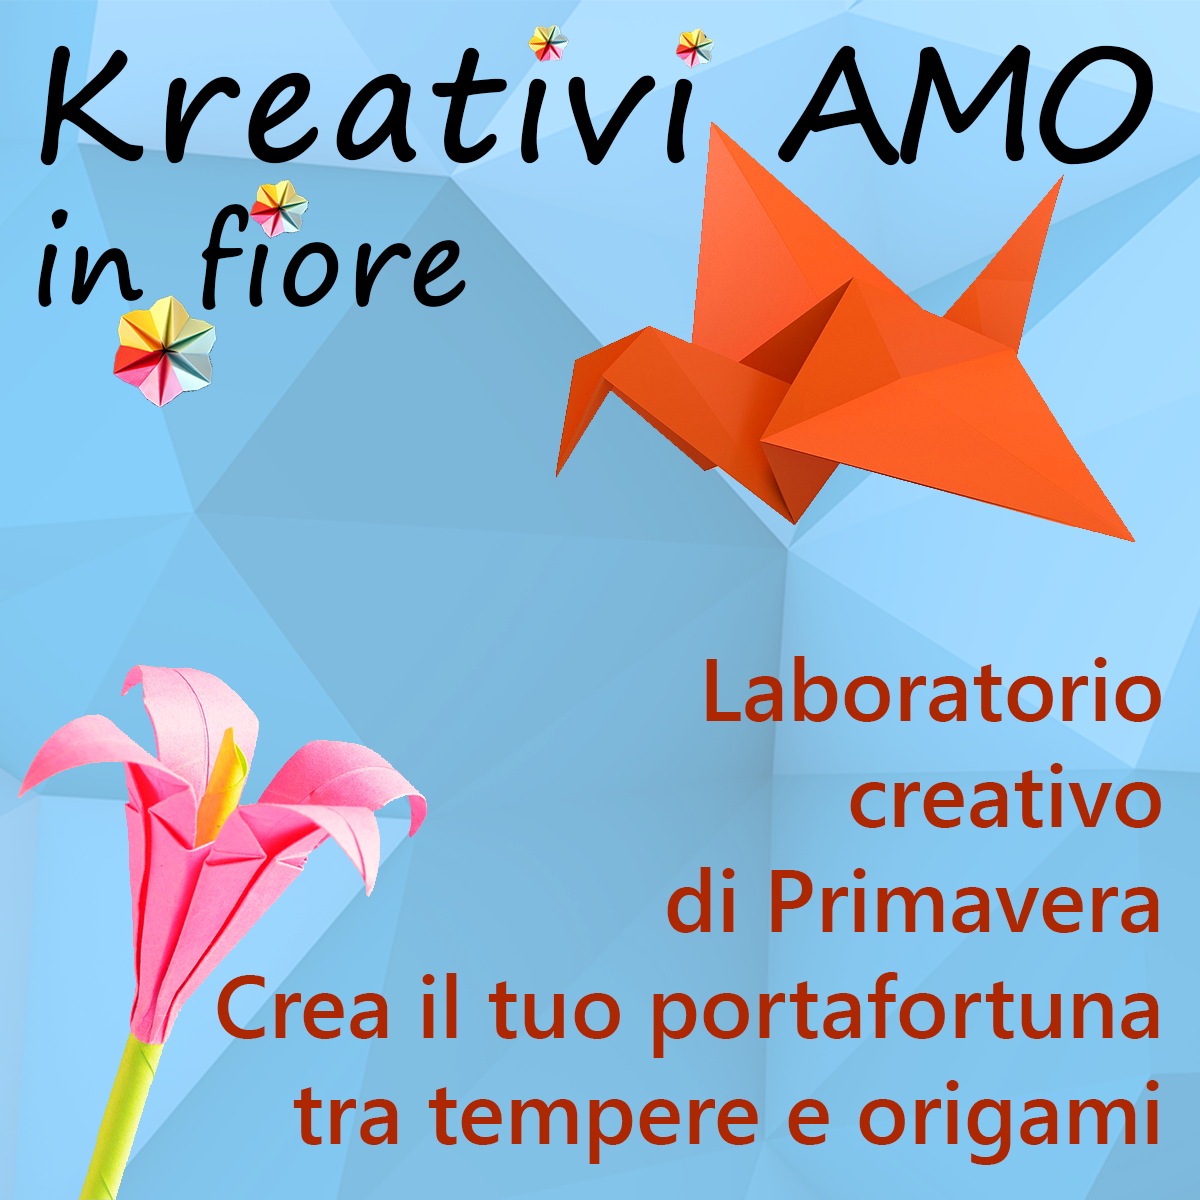 KreativiAMO in fiore quadrato 1 - Kreativa